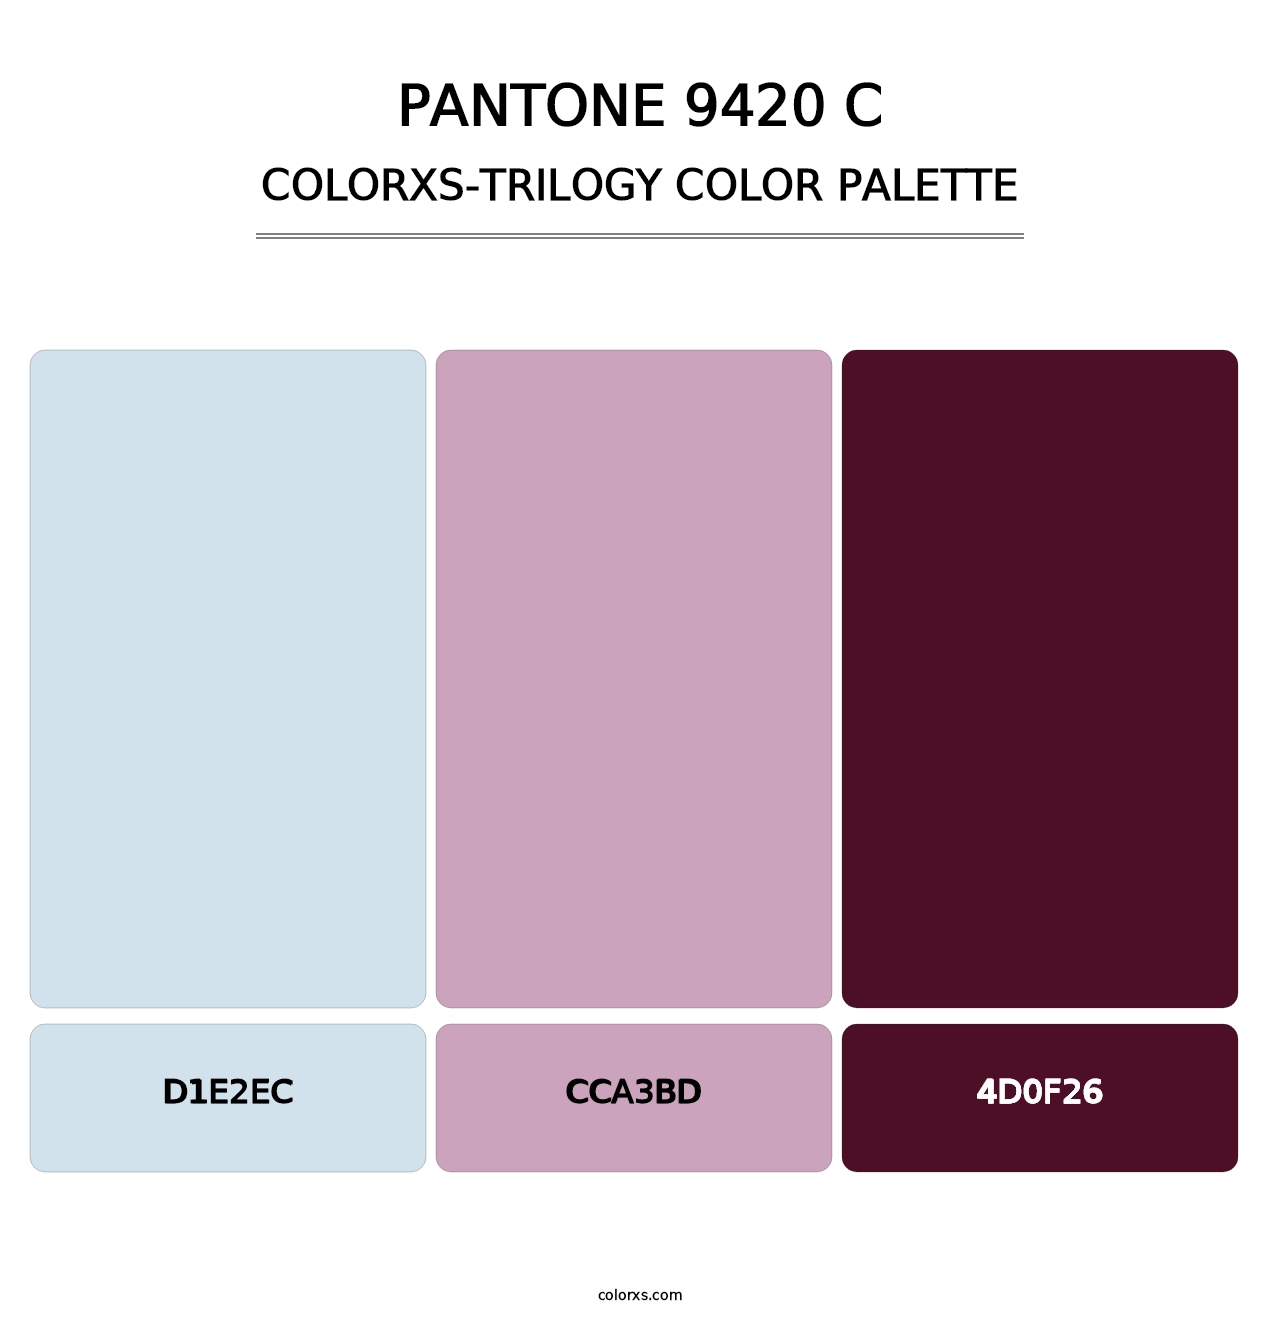 PANTONE 9420 C - Colorxs Trilogy Palette